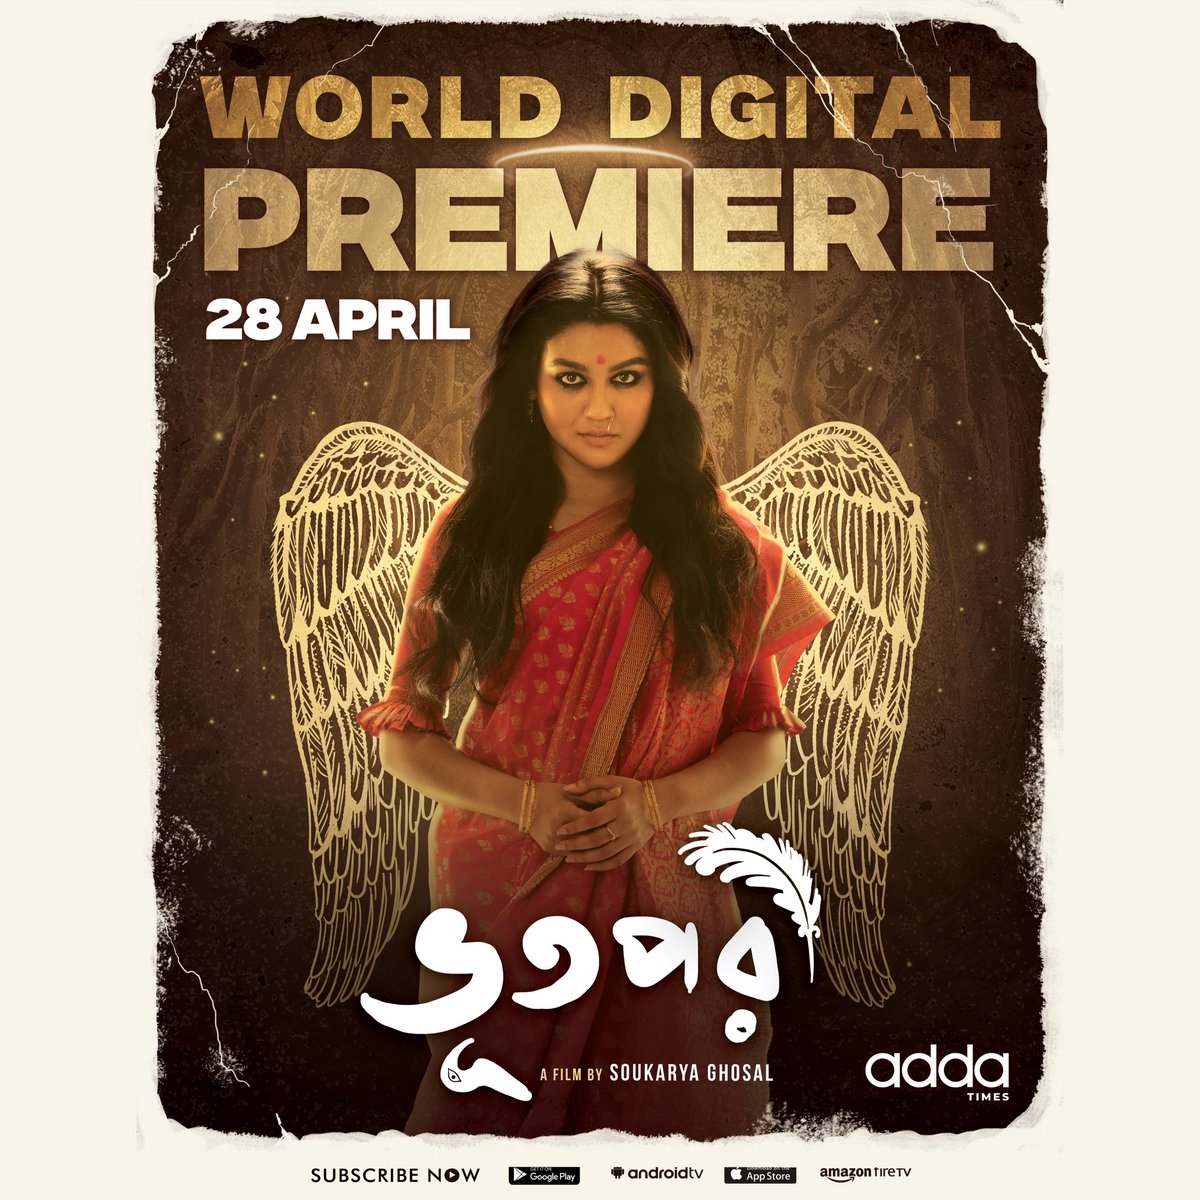 মানুষ মরে ভূত হলে, ভূত মরে কি পরী হয়? অপেক্ষার অবসান… World Digital Premiere on 28 April. “ভূতপরী” আসছে #Addatimes-এ! #SoukaryaGhosal #JayaAhsan #Bhootpori #BhootMorePoriHoi #ComingSoon #Addatimes #AddaEkhonJomjomat